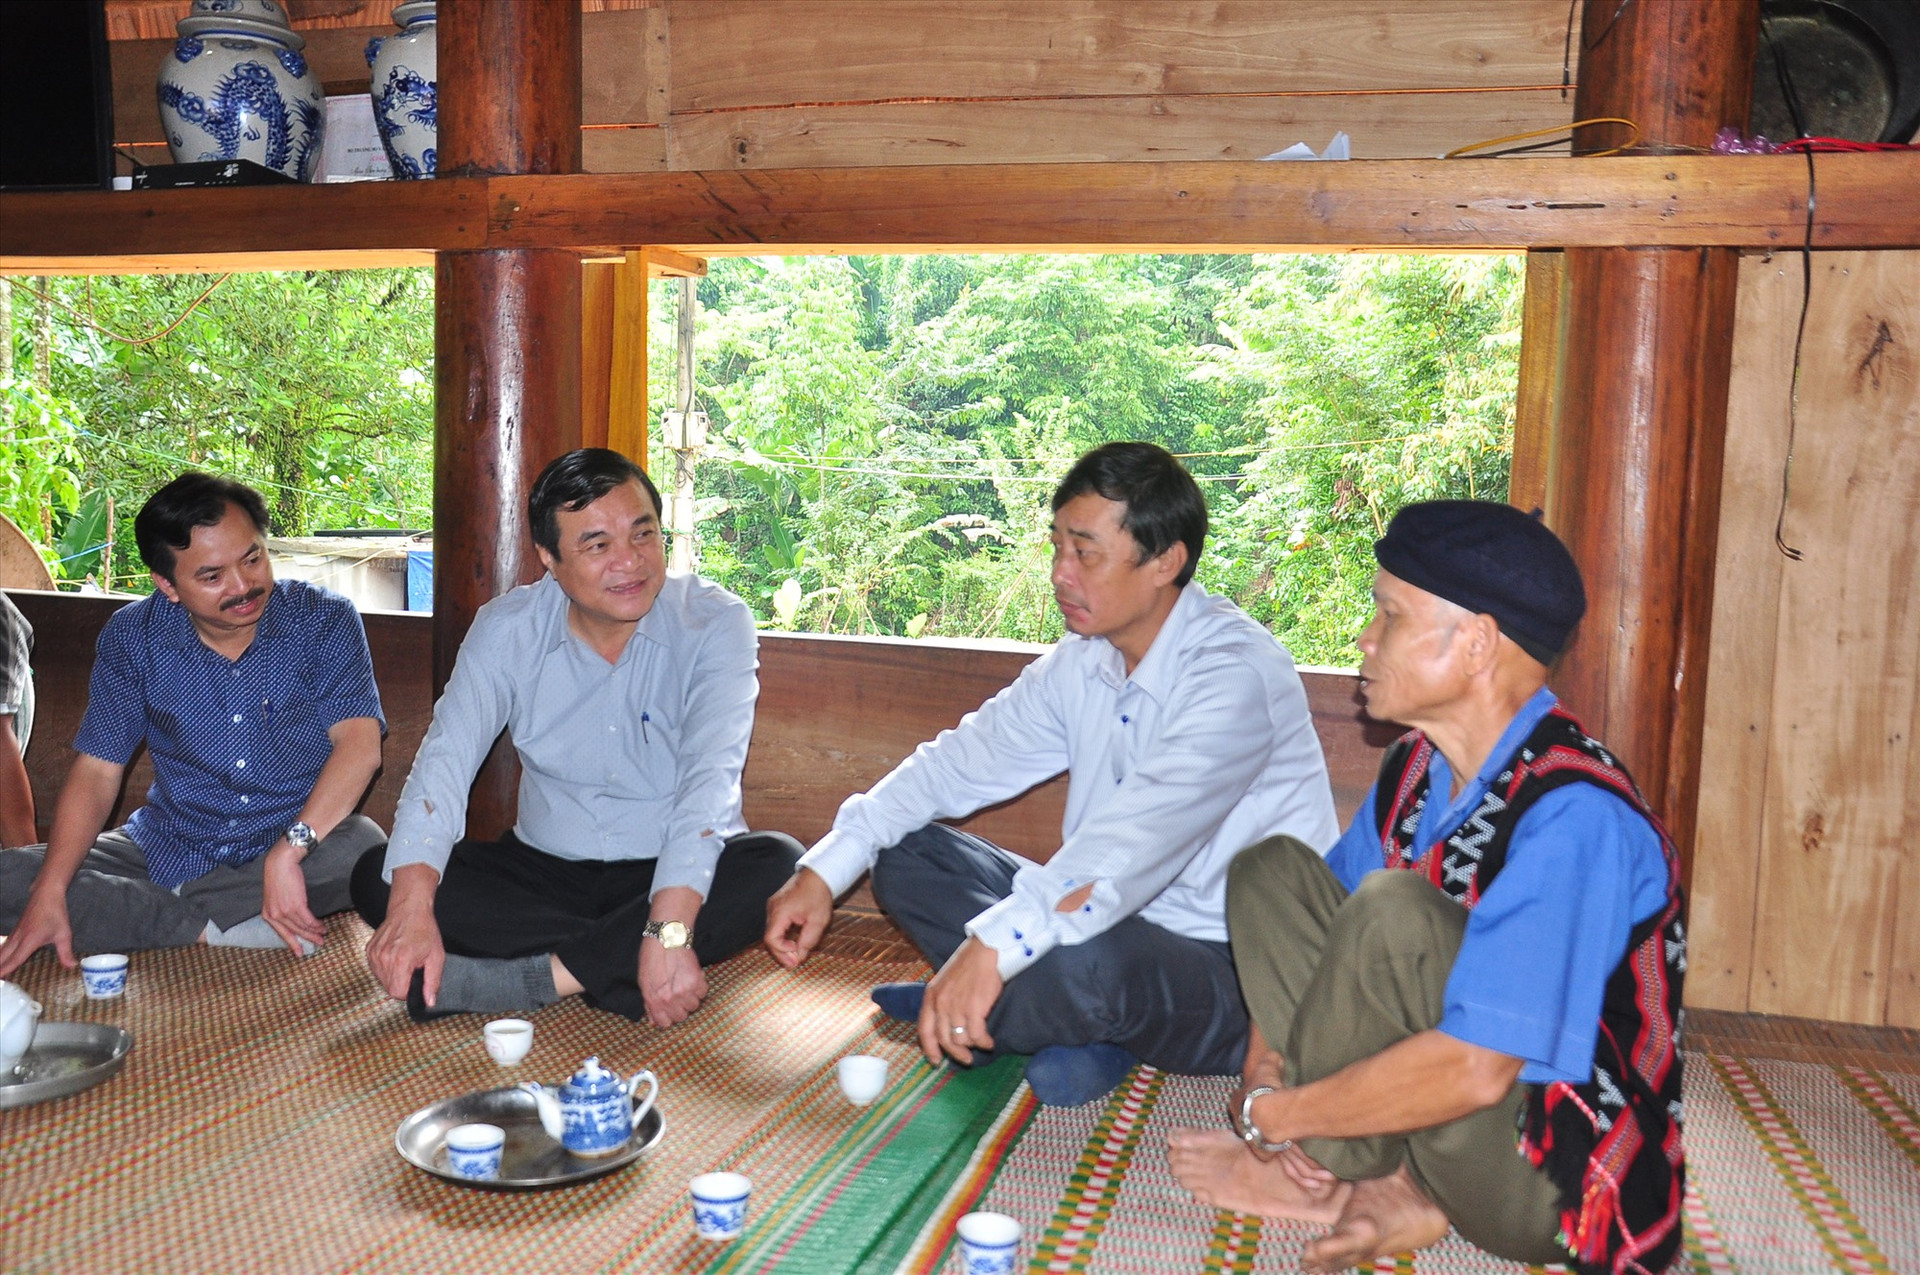 Bí thư Tỉnh ủy Phan Việt Cường thăm hỏi, ghi nhận sự đóng góp tích cực của các già làng trong phát triển kinh tế - xã hội miền núi. Ảnh: V.ANH